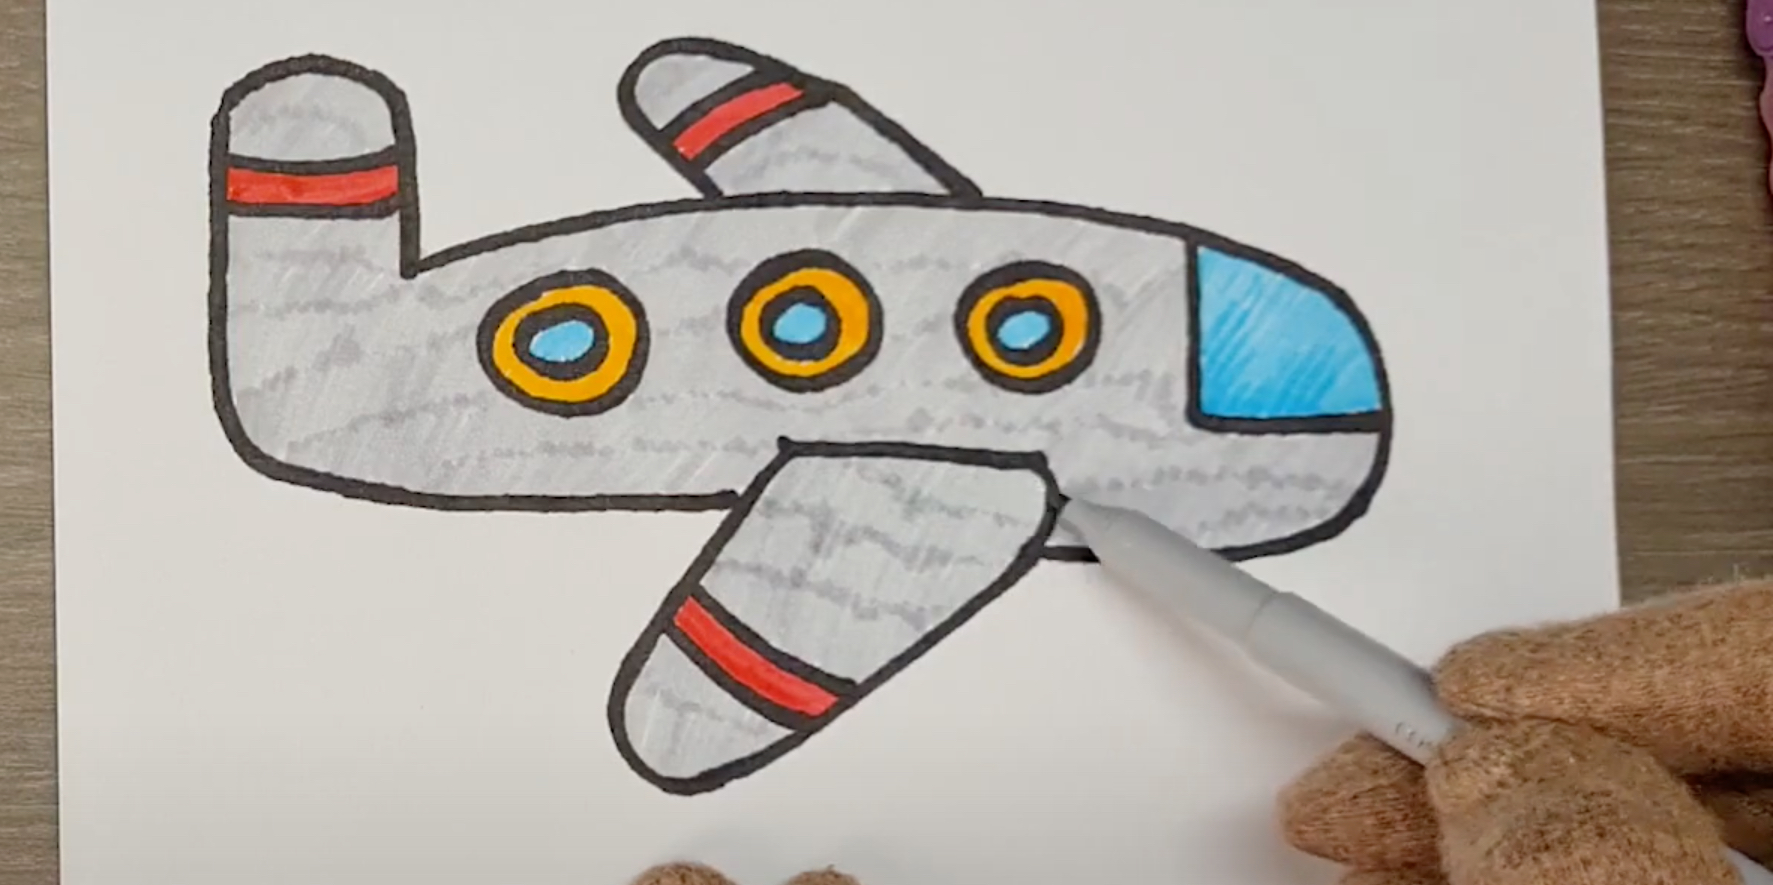 Оригами самолет / Как сделать самолет из бумаги / Бумажный самолет / Origami paper plane